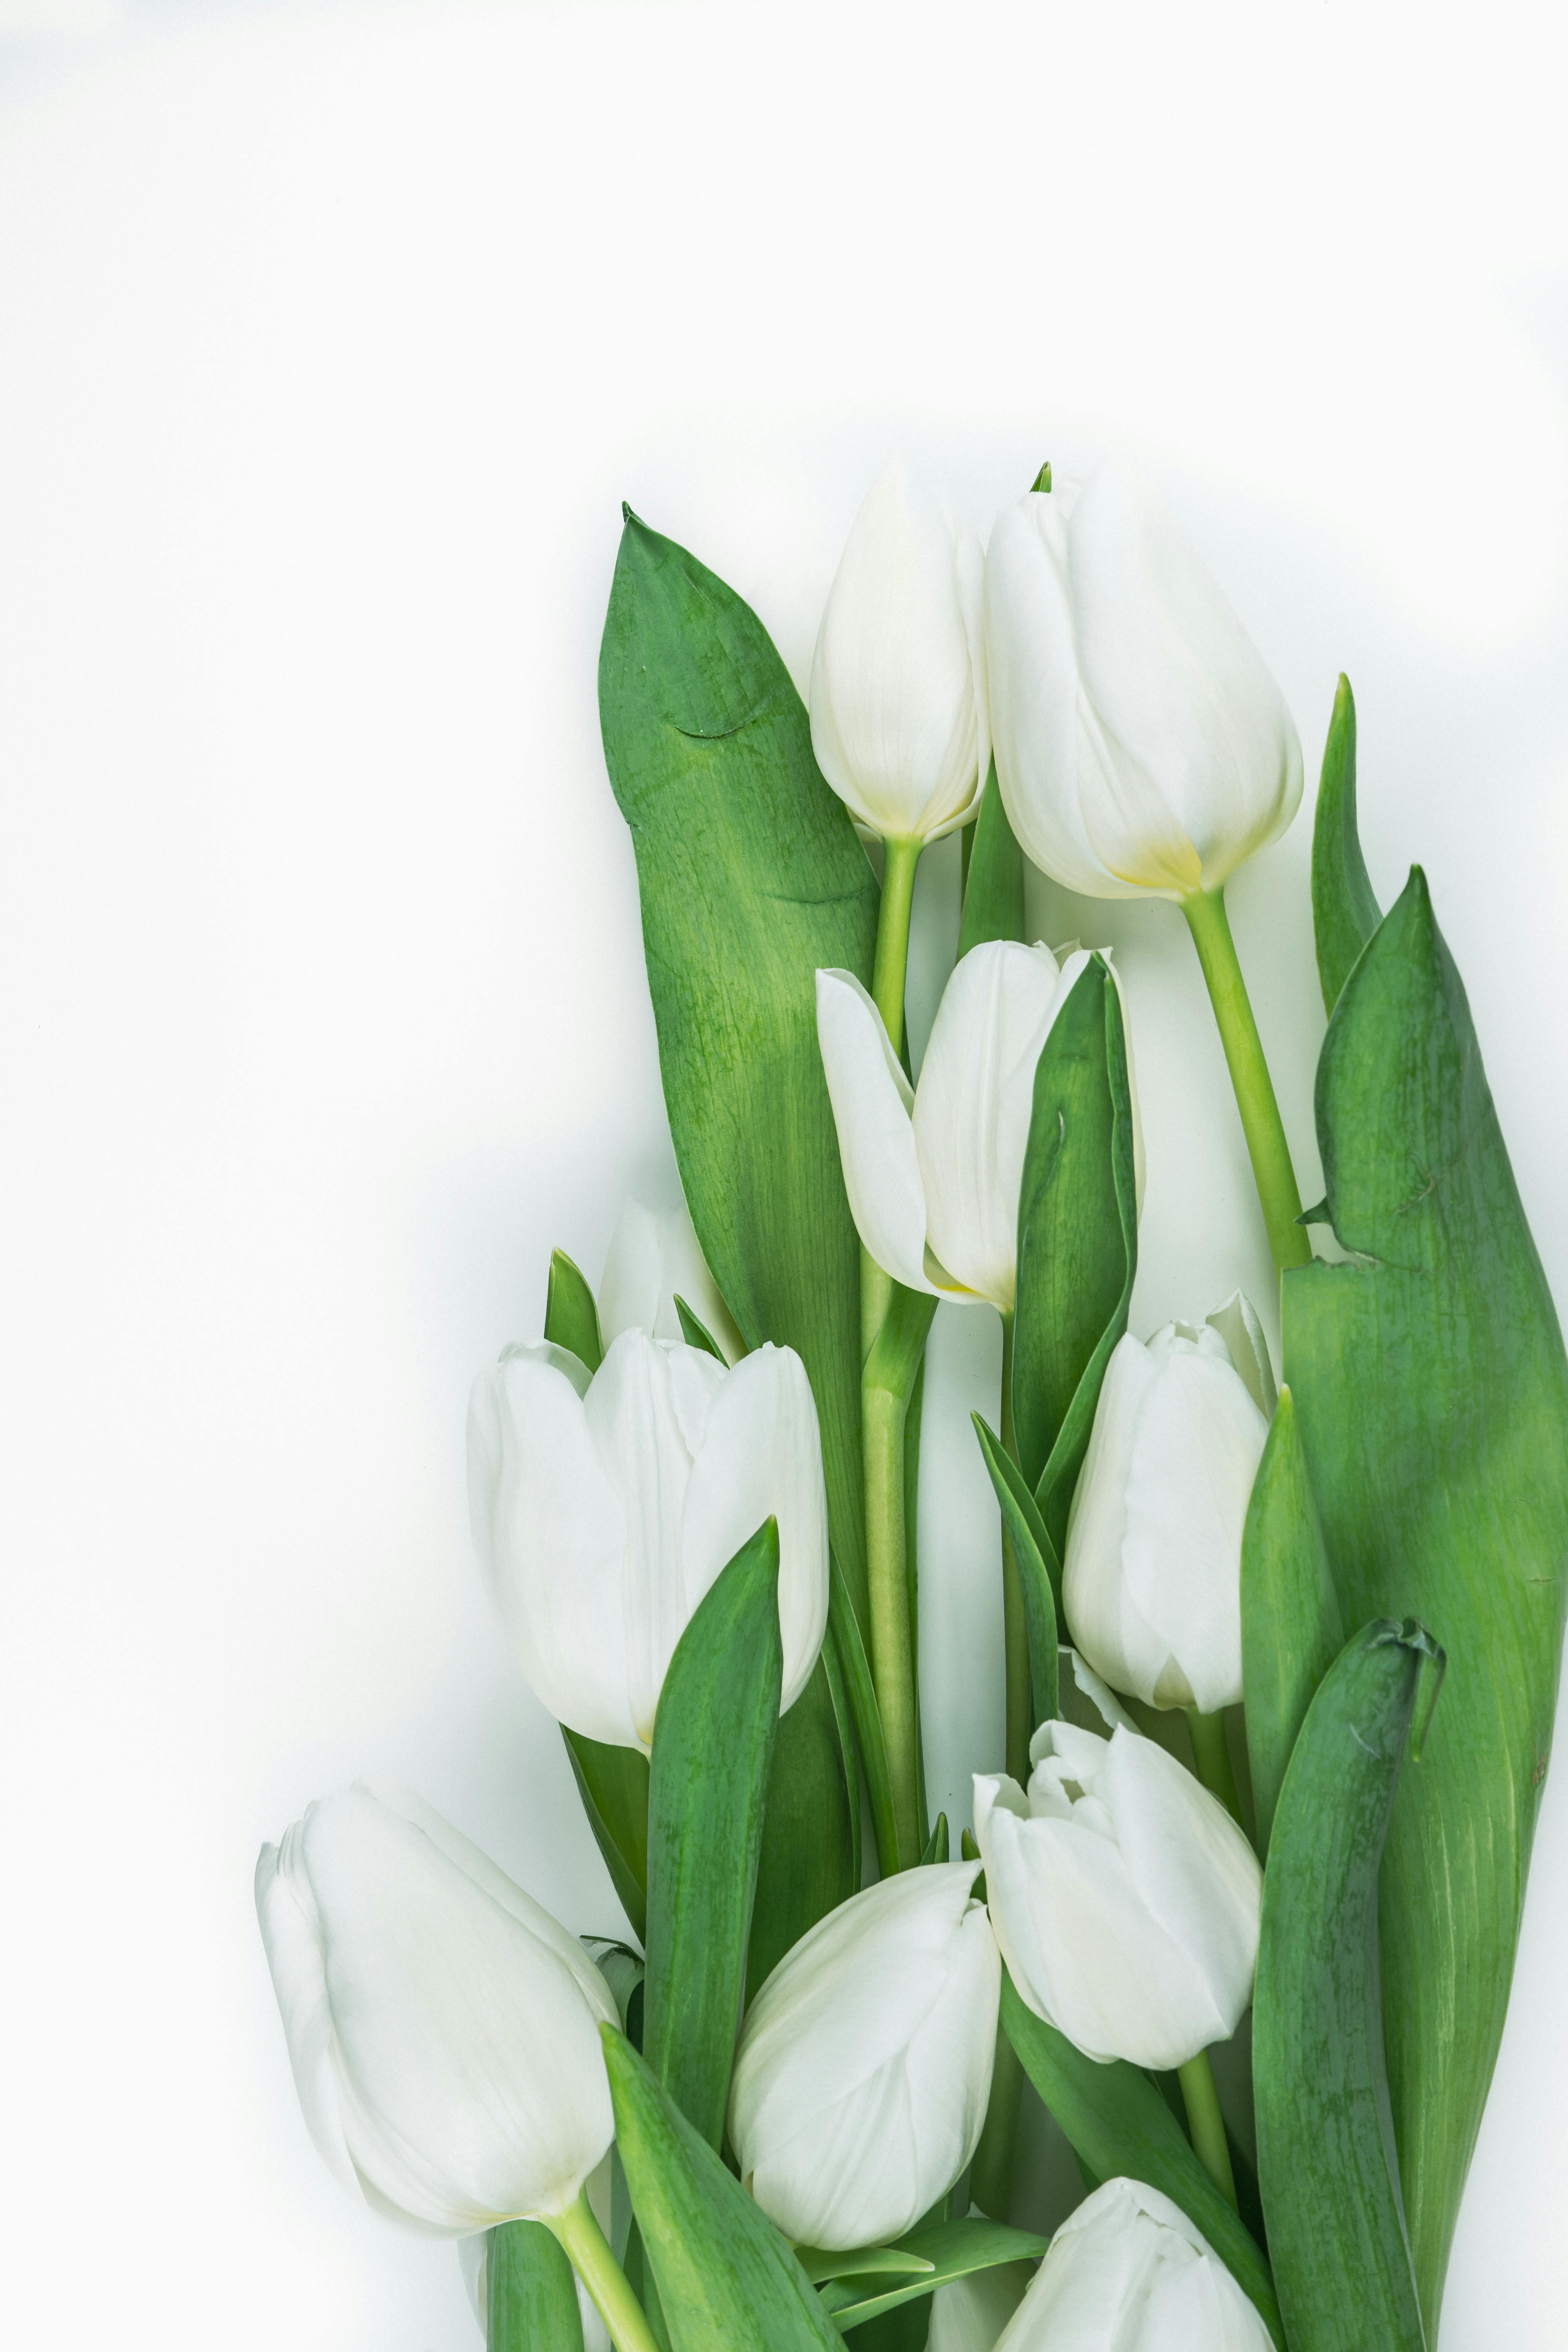 100 hình nền hoa tulip Full HD 4K cực trang nhã thanh lịch